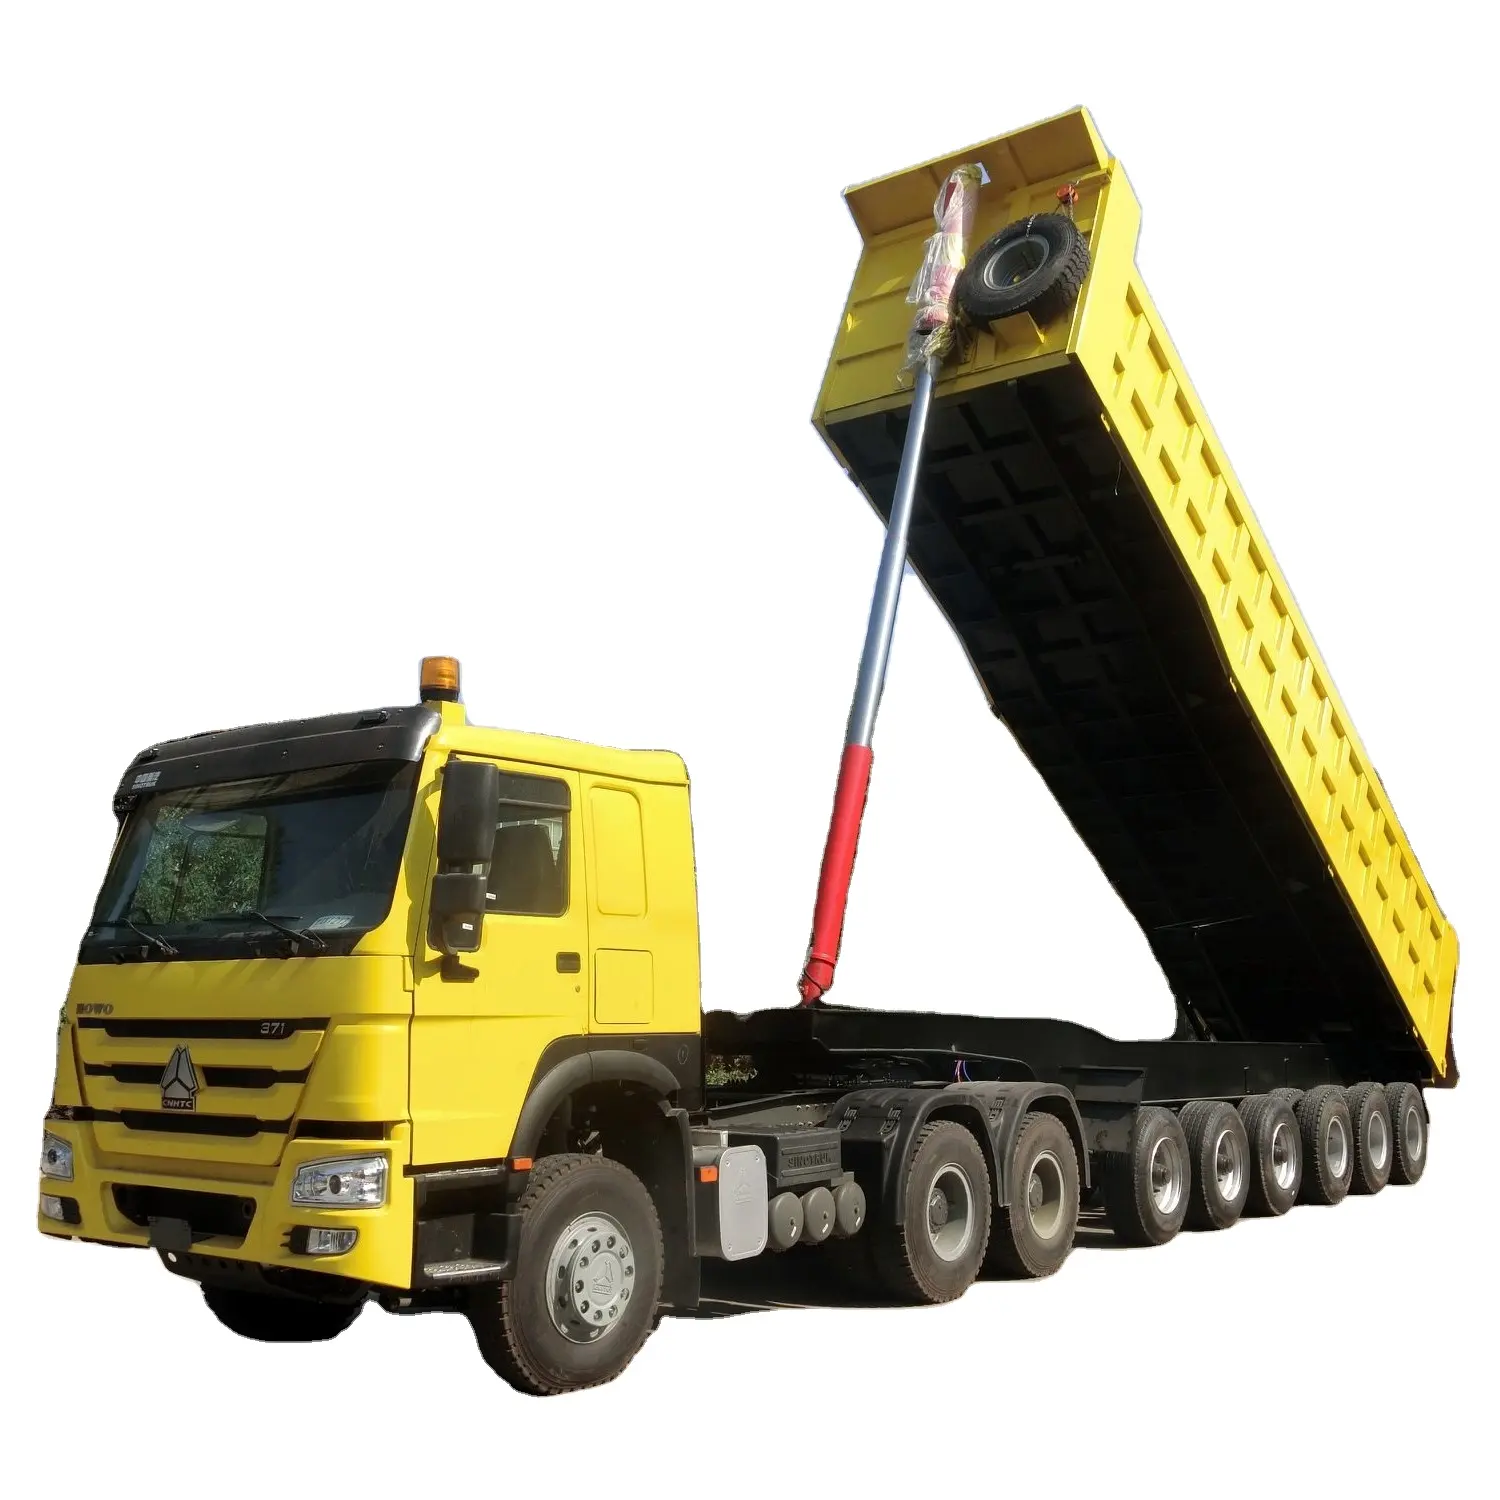 6 Trục 11 M Dump Truck Trailer 90 Tấn Hình Vuông Tipper Dump Giao Thông Vận Tải Phẳng Bán Trailer Cho Ghana Thị Trường